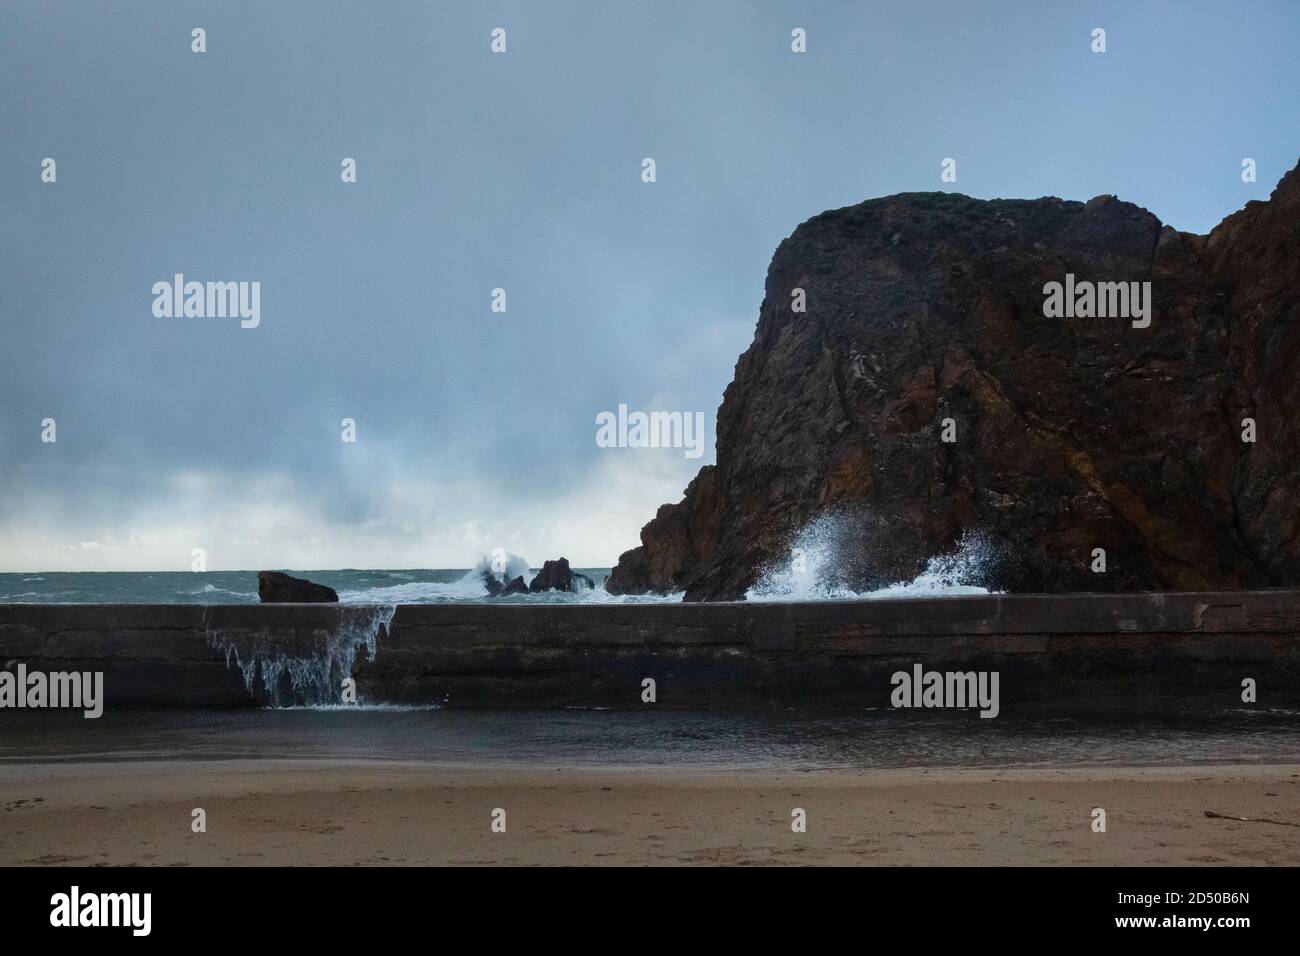 Waves crashing over wall sea defence Stock Photo